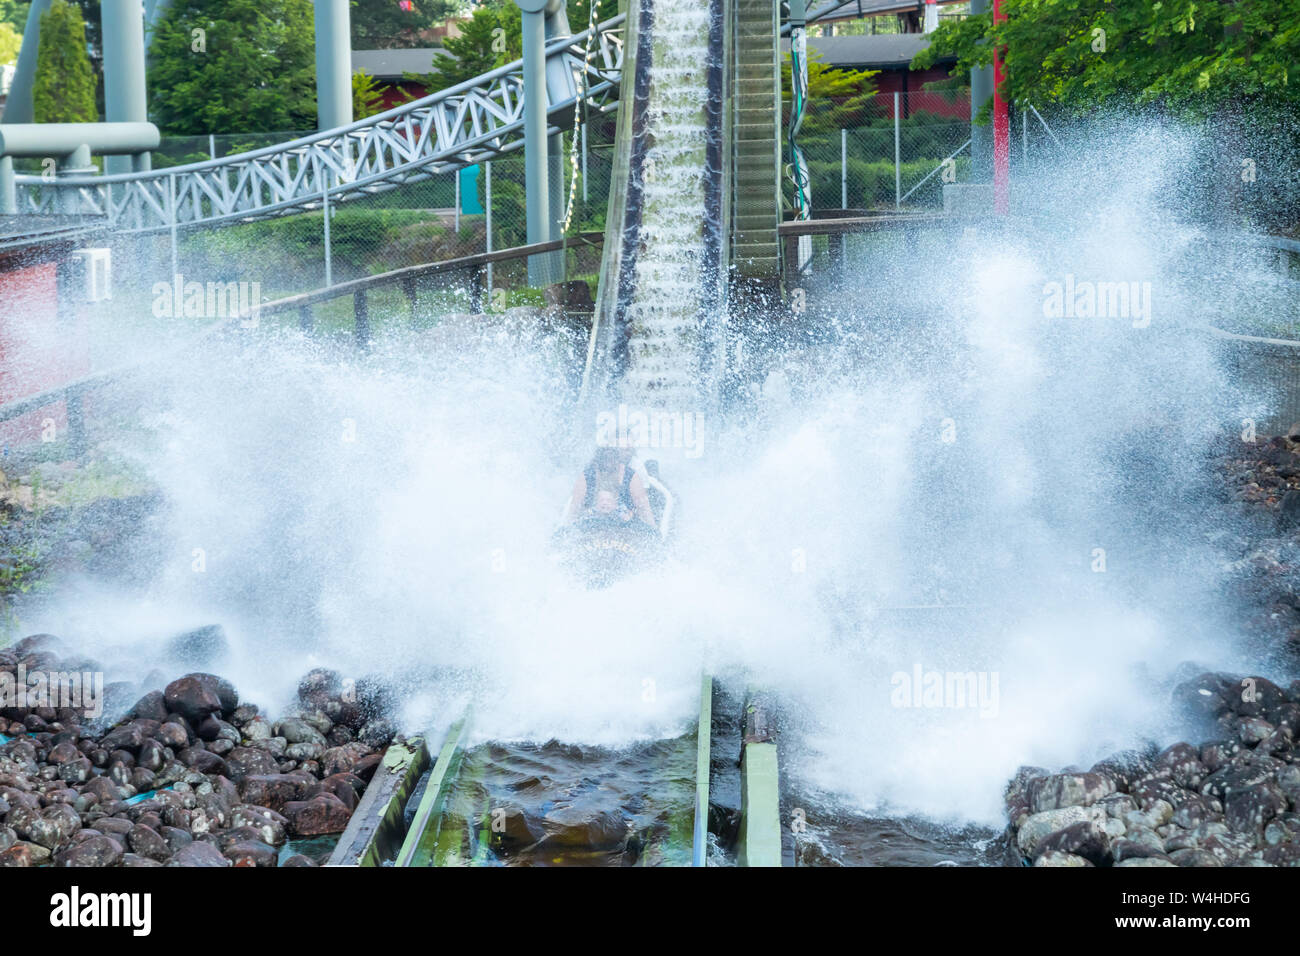 Fun water ride fiume Log in parco di divertimenti in estate Foto Stock